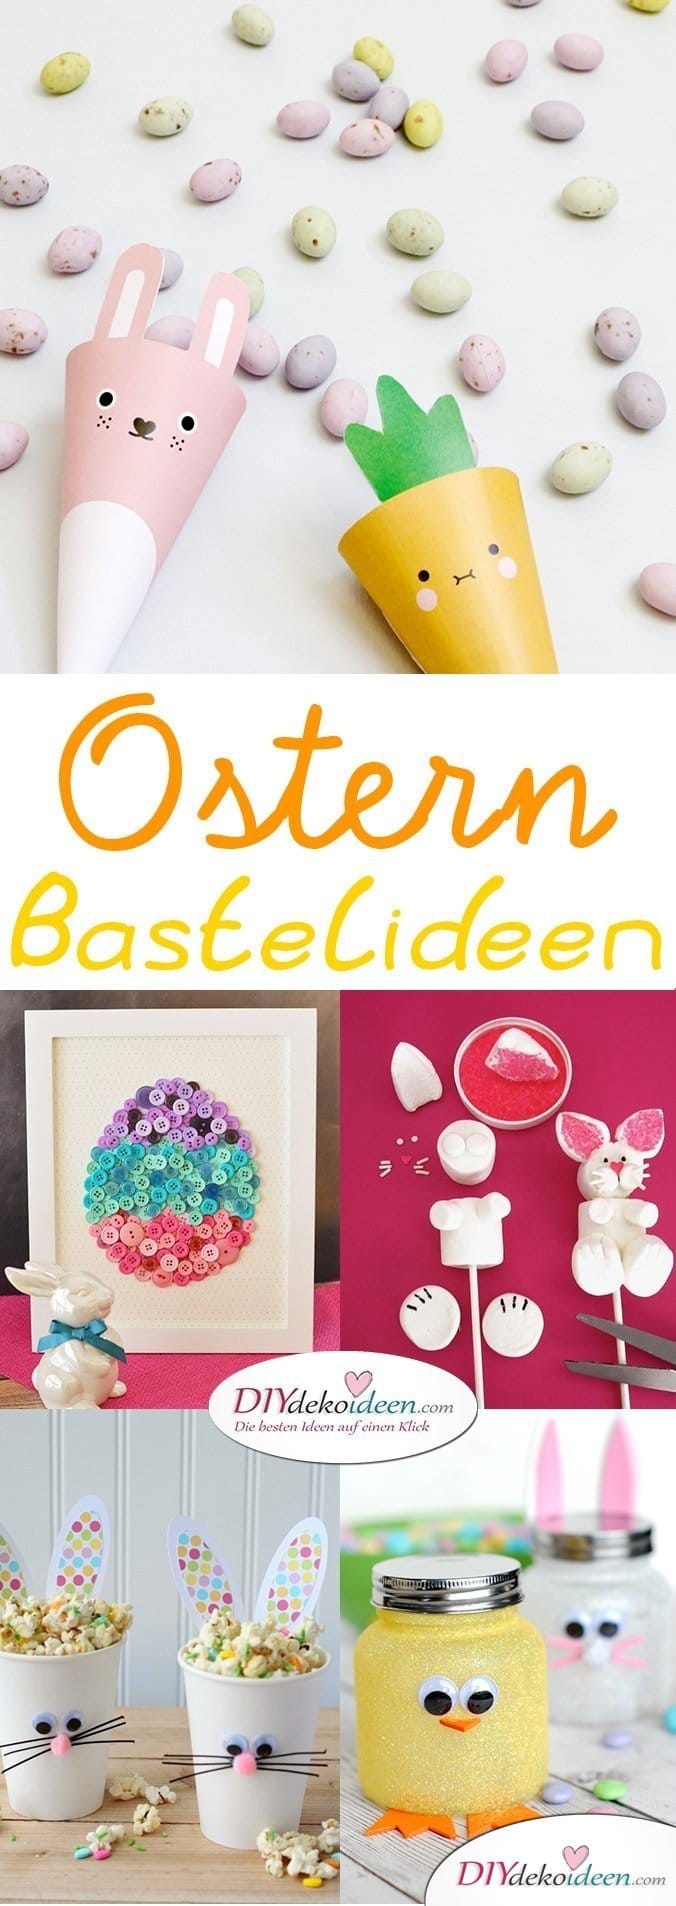 Bastelideen für Ostern, DIY Bastelideen für Ostern, Ostern basteln, Oster Bastelidee, Oster Deko, Osterdeko, Dekoideen Ostern, Bastelideen Ostern 